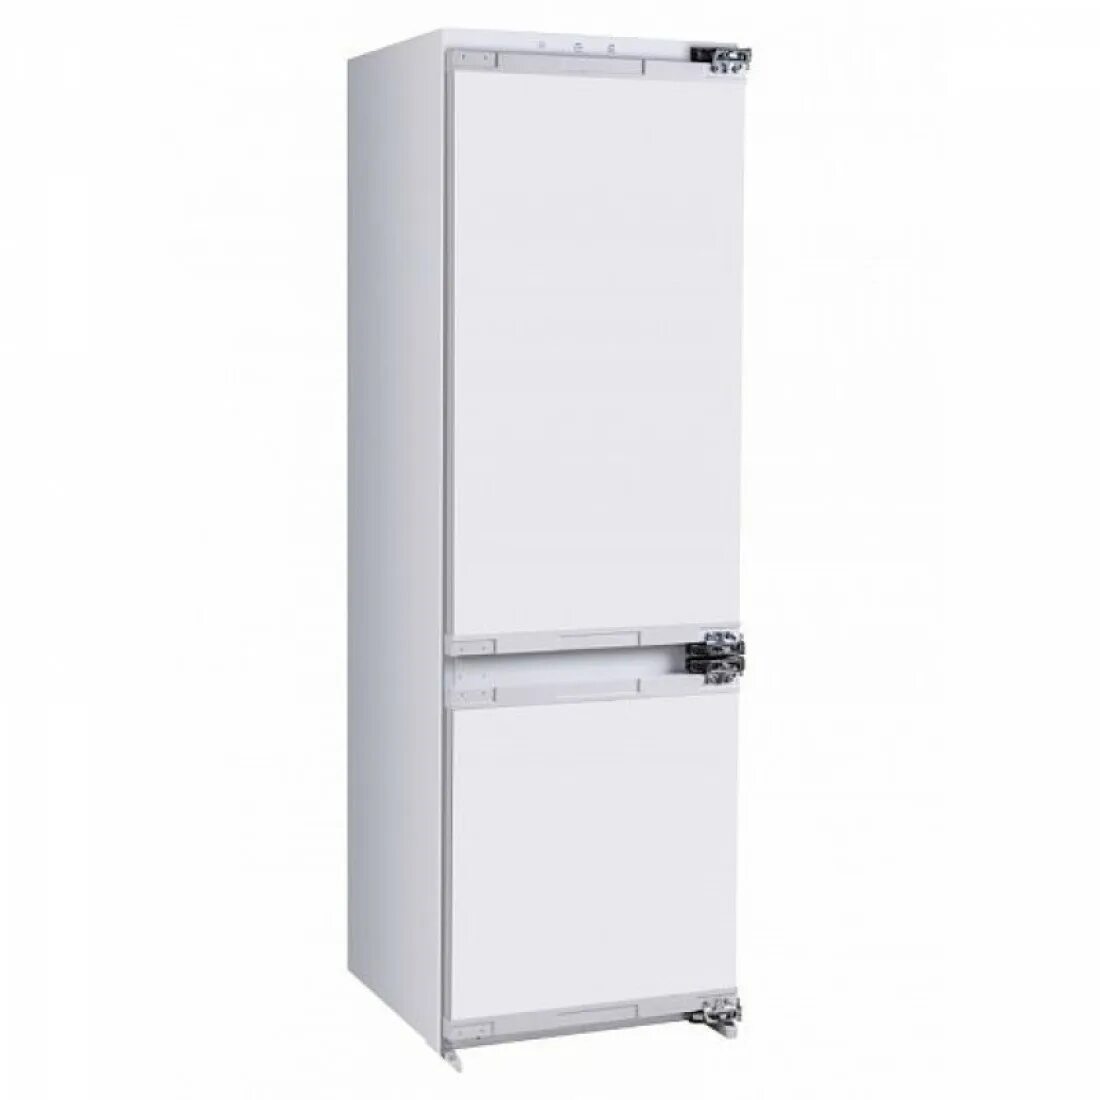 Встраиваемый холодильник Haier hrf236nfru. Встраиваемый холодильник Haier hrf310wbru. Встраиваемый холодильник Комби Haier hrf236nfru. Встроенный холодильник Haier hrf310wbru. Haier bcft629twru